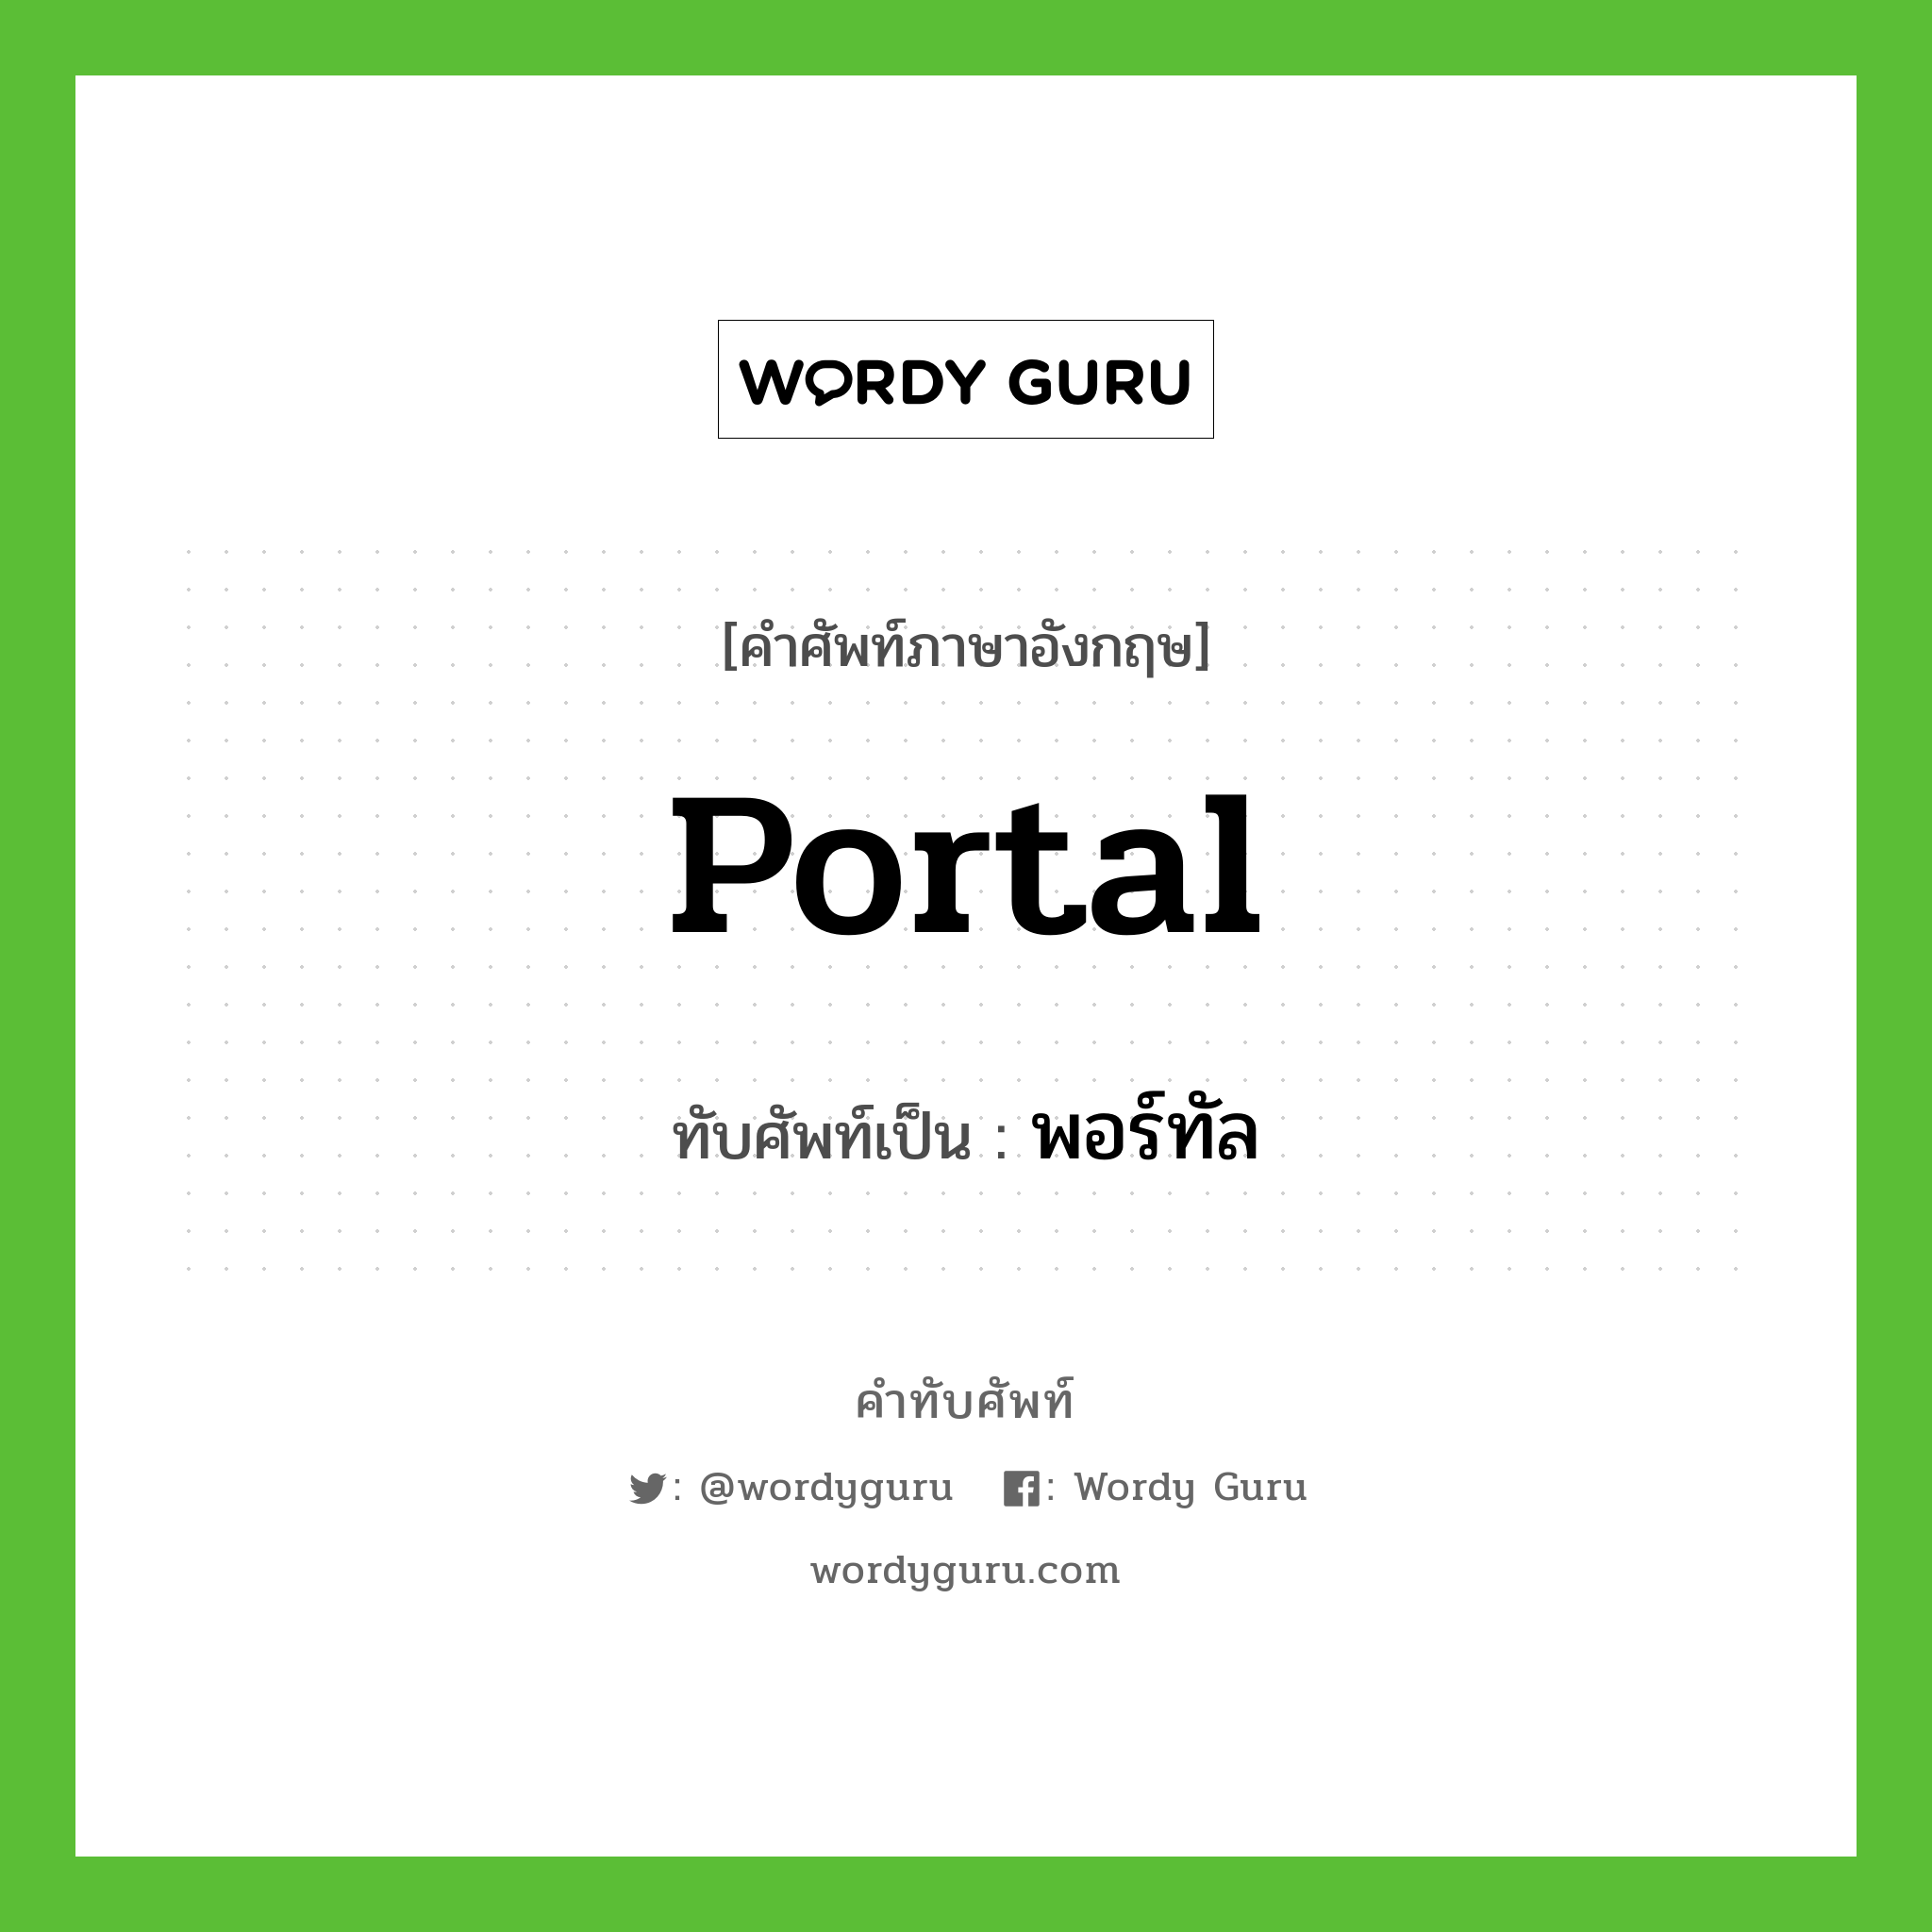 portal เขียนเป็นคำไทยว่าอะไร?, คำศัพท์ภาษาอังกฤษ portal ทับศัพท์เป็น พอร์ทัล